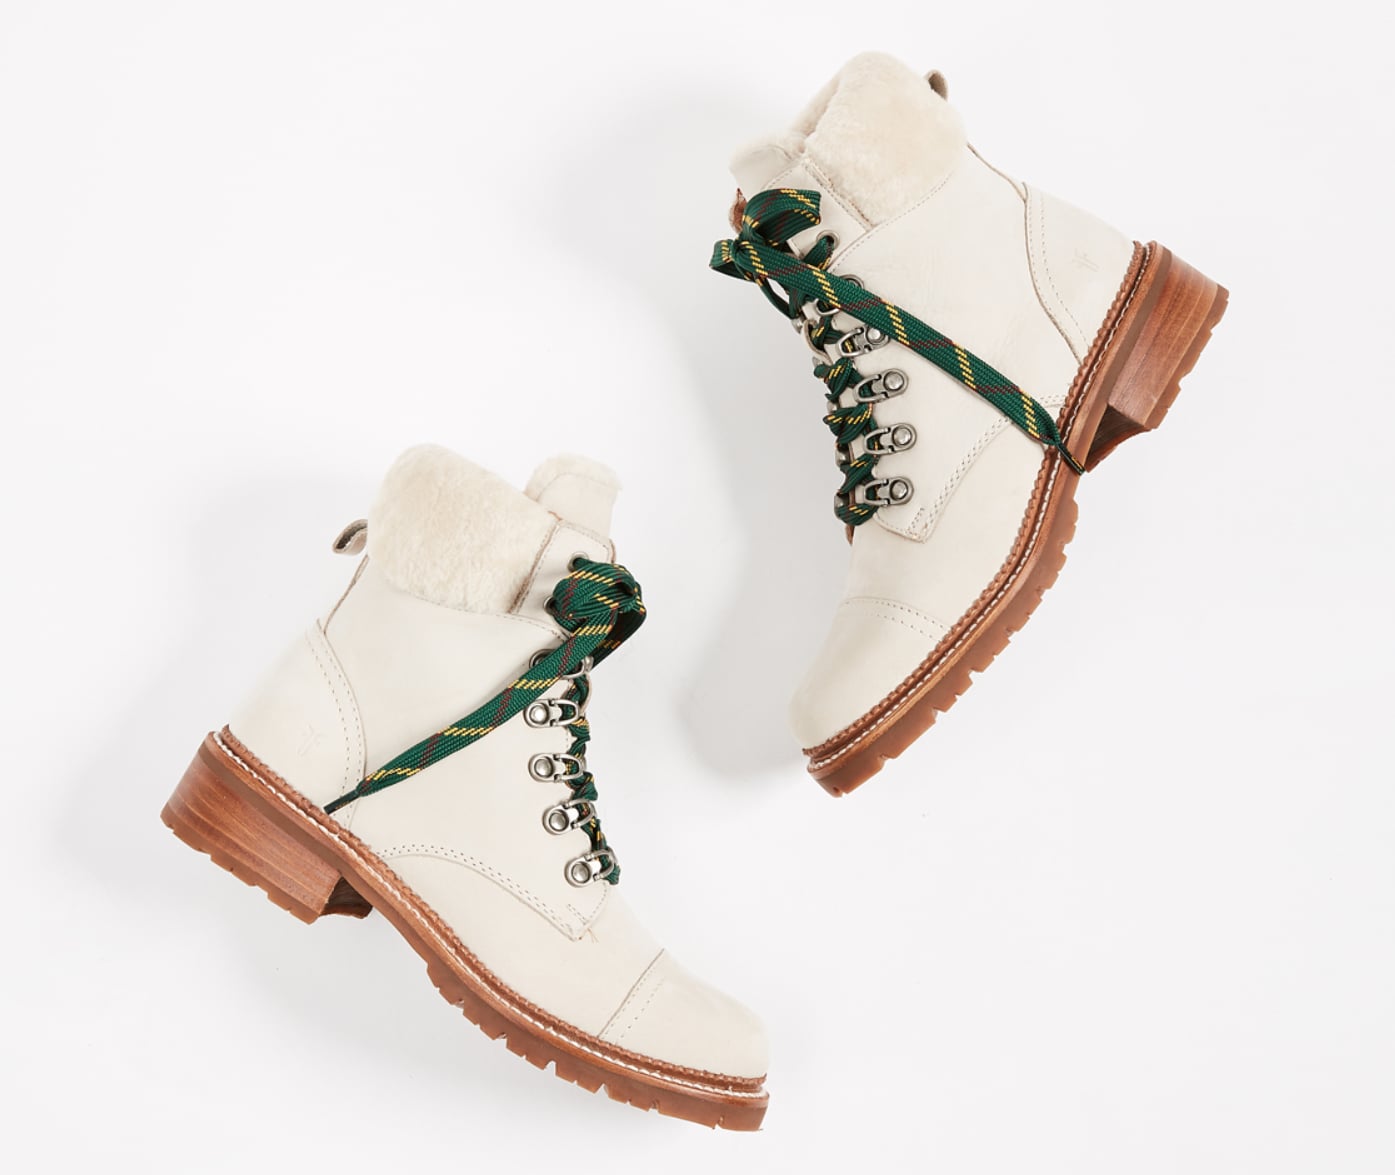 samantha hiker boots